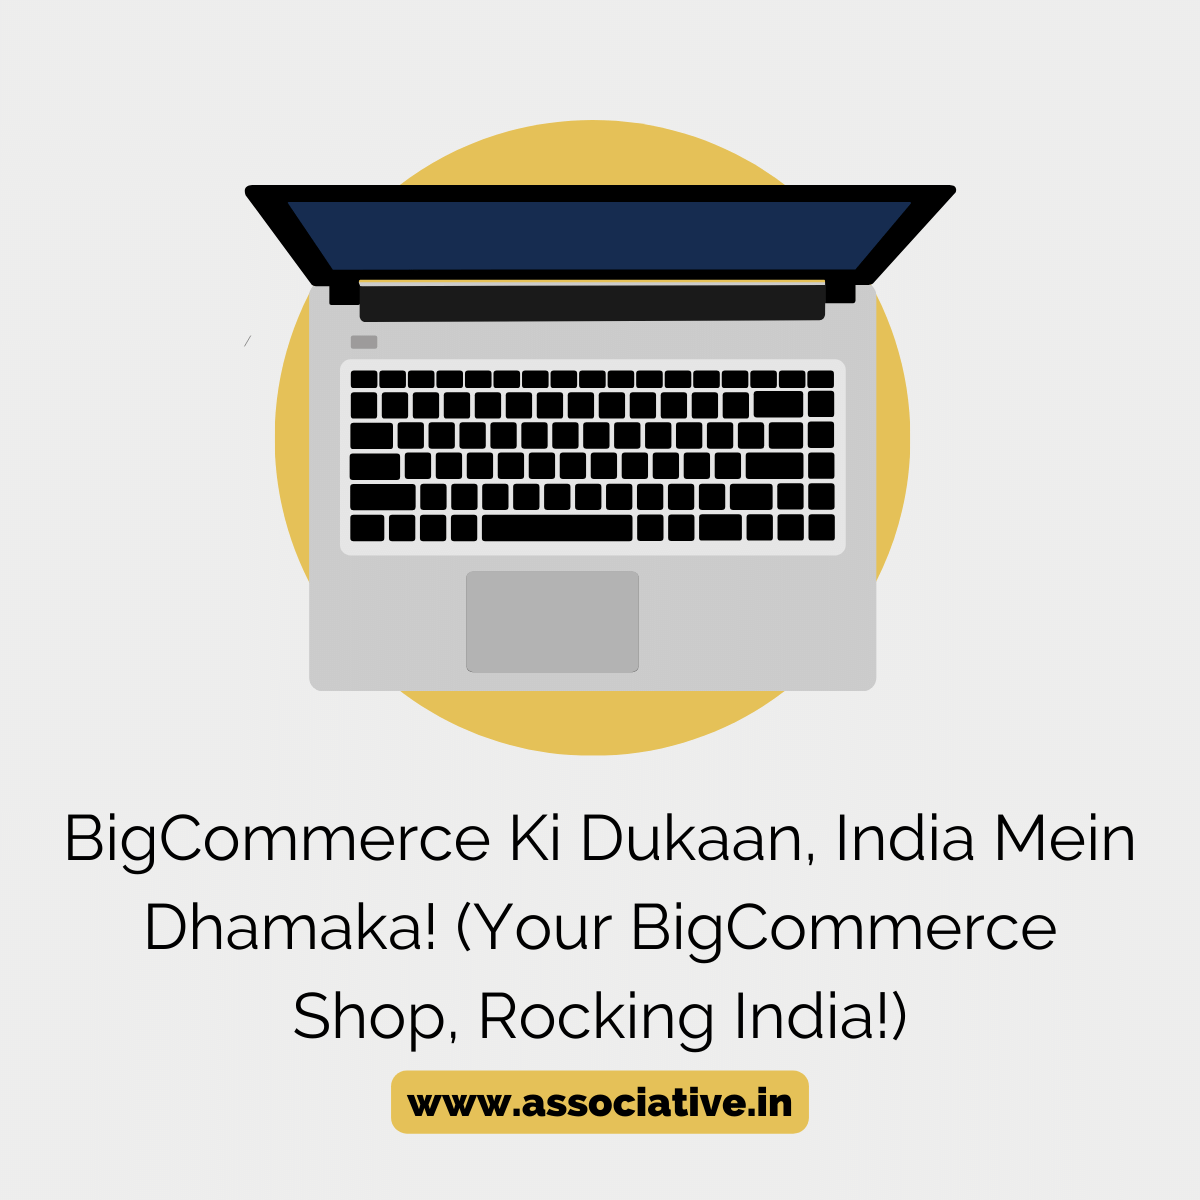 Your BigCommerce Shop, Rocking India!